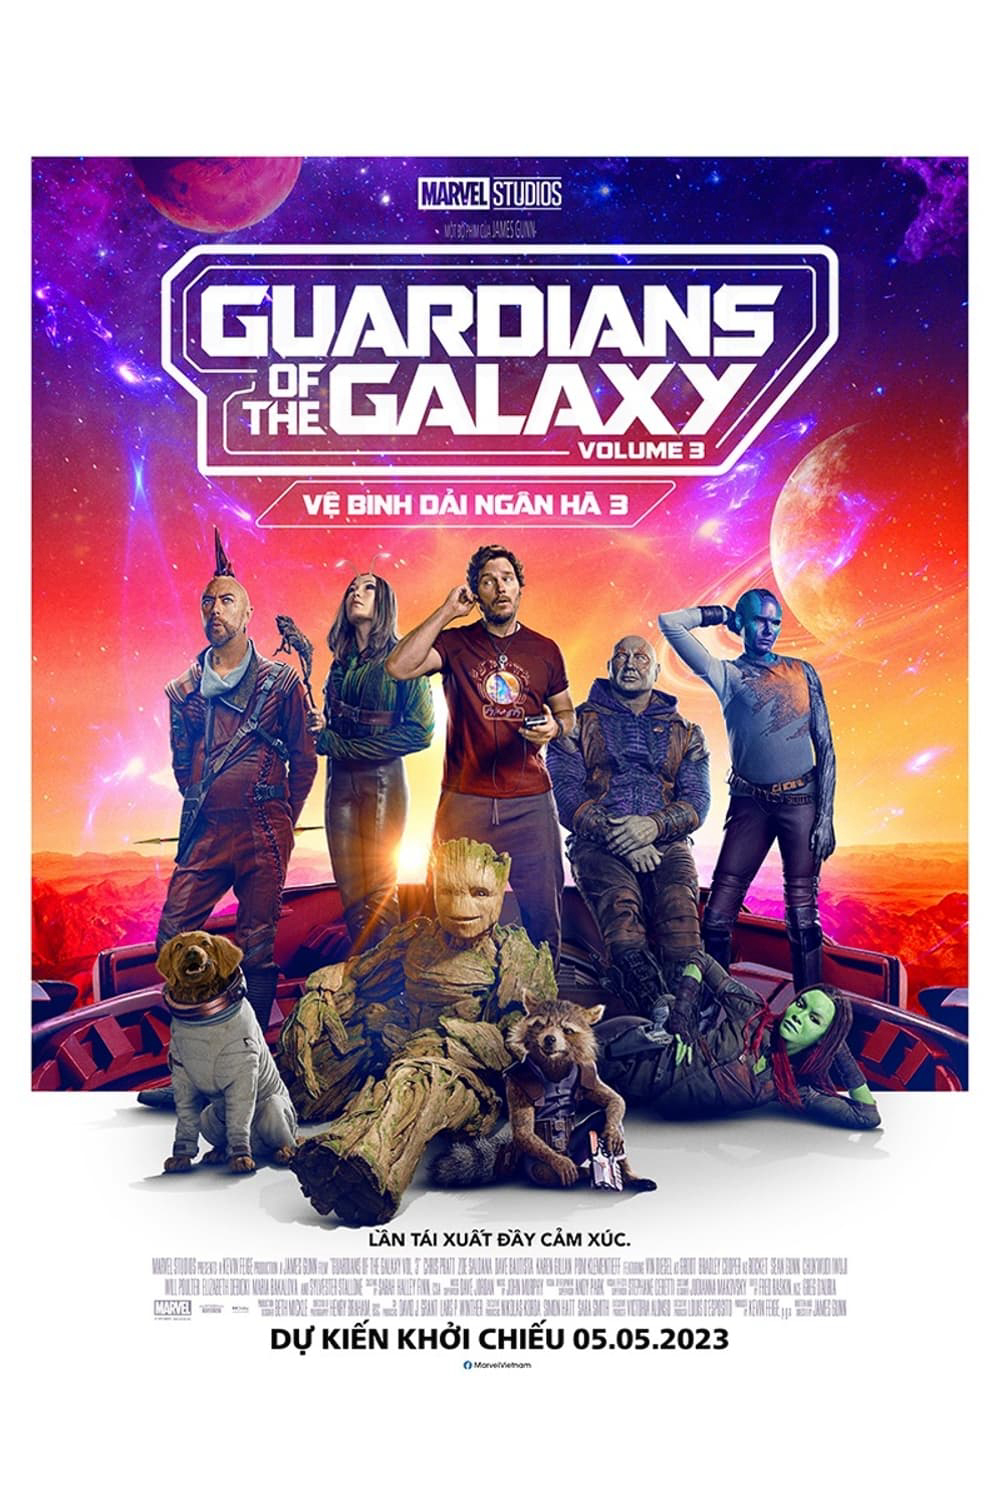 Poster Phim Vệ Binh Dải Ngân Hà 3 (Guardians of the Galaxy Volume 3)